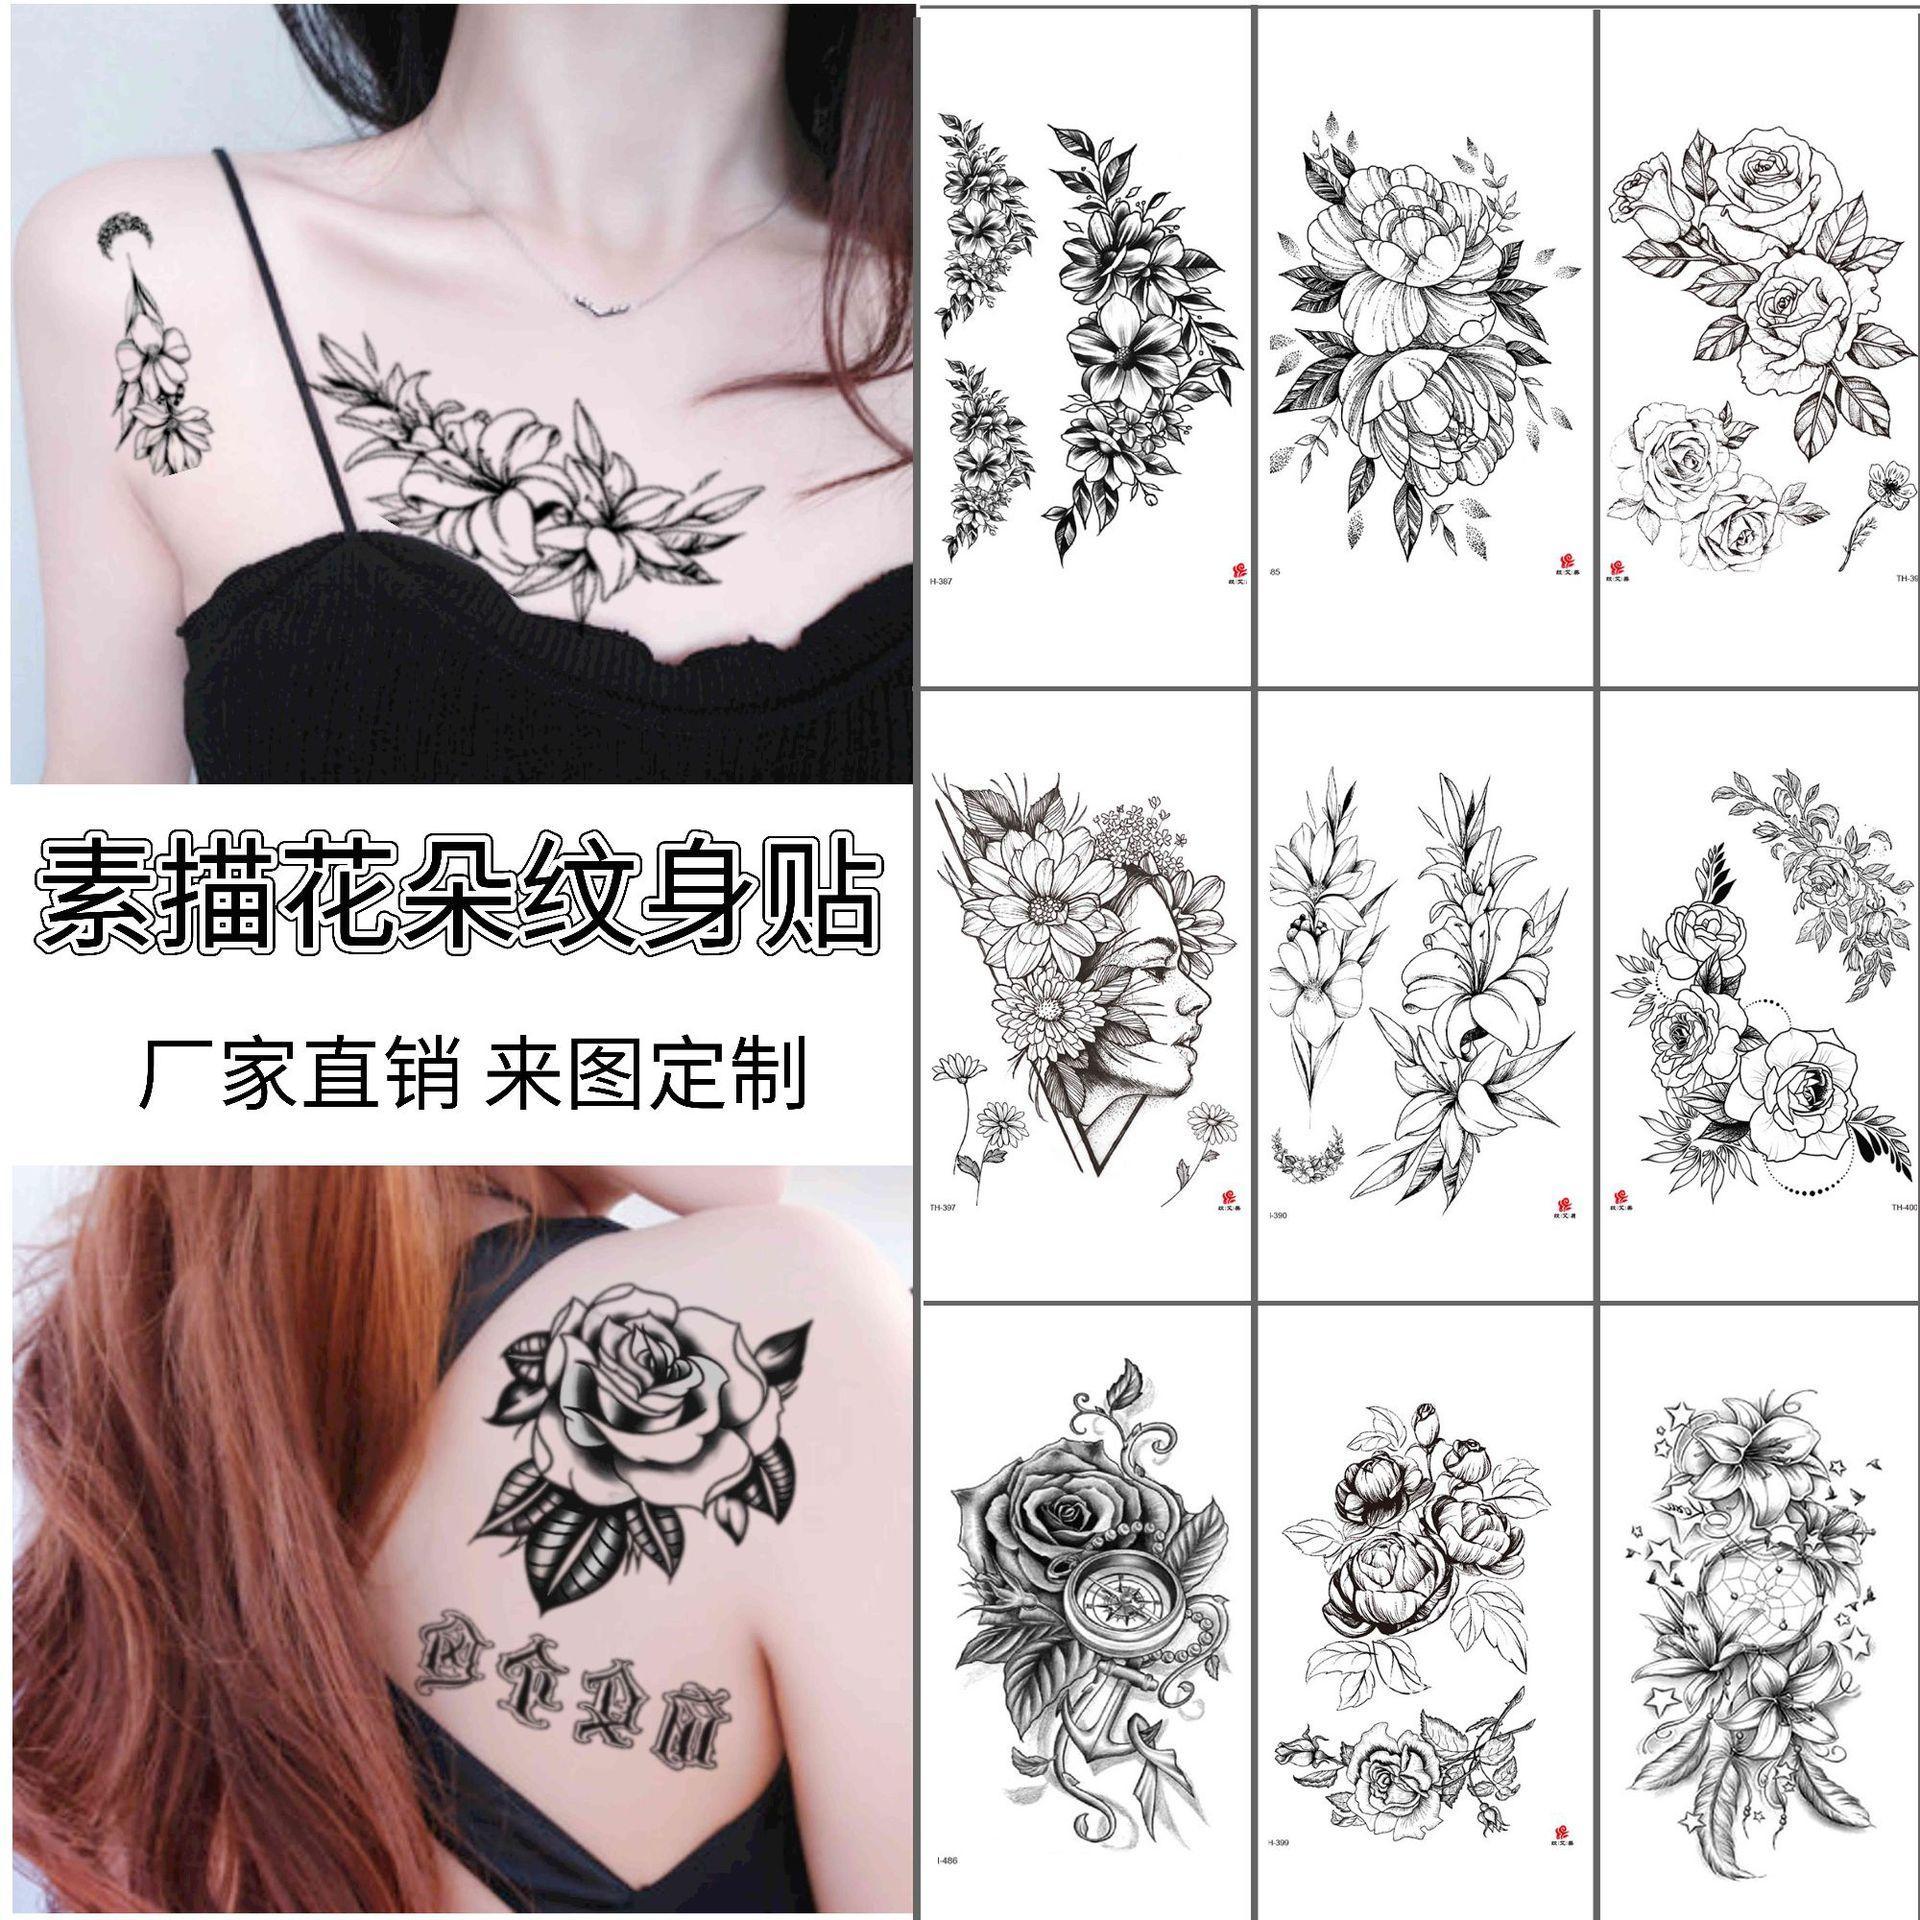 黑白素描花朵纹身贴玫瑰套装手绘小清新图案素描花遮疤纹身水转印